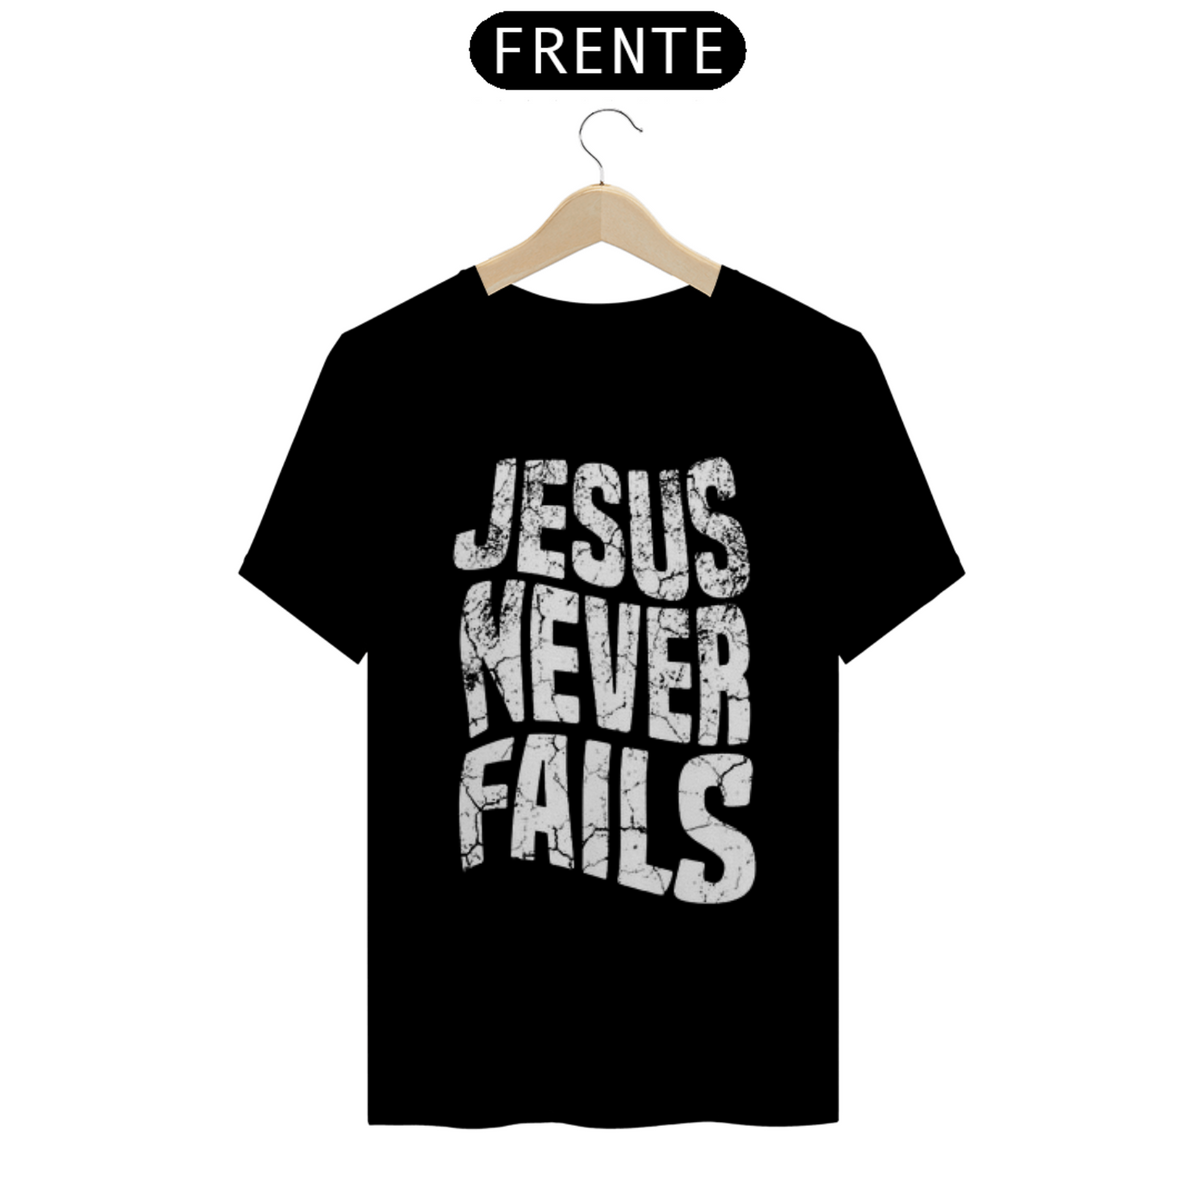 Nome do produto: Camiseta Jesus Never Fails